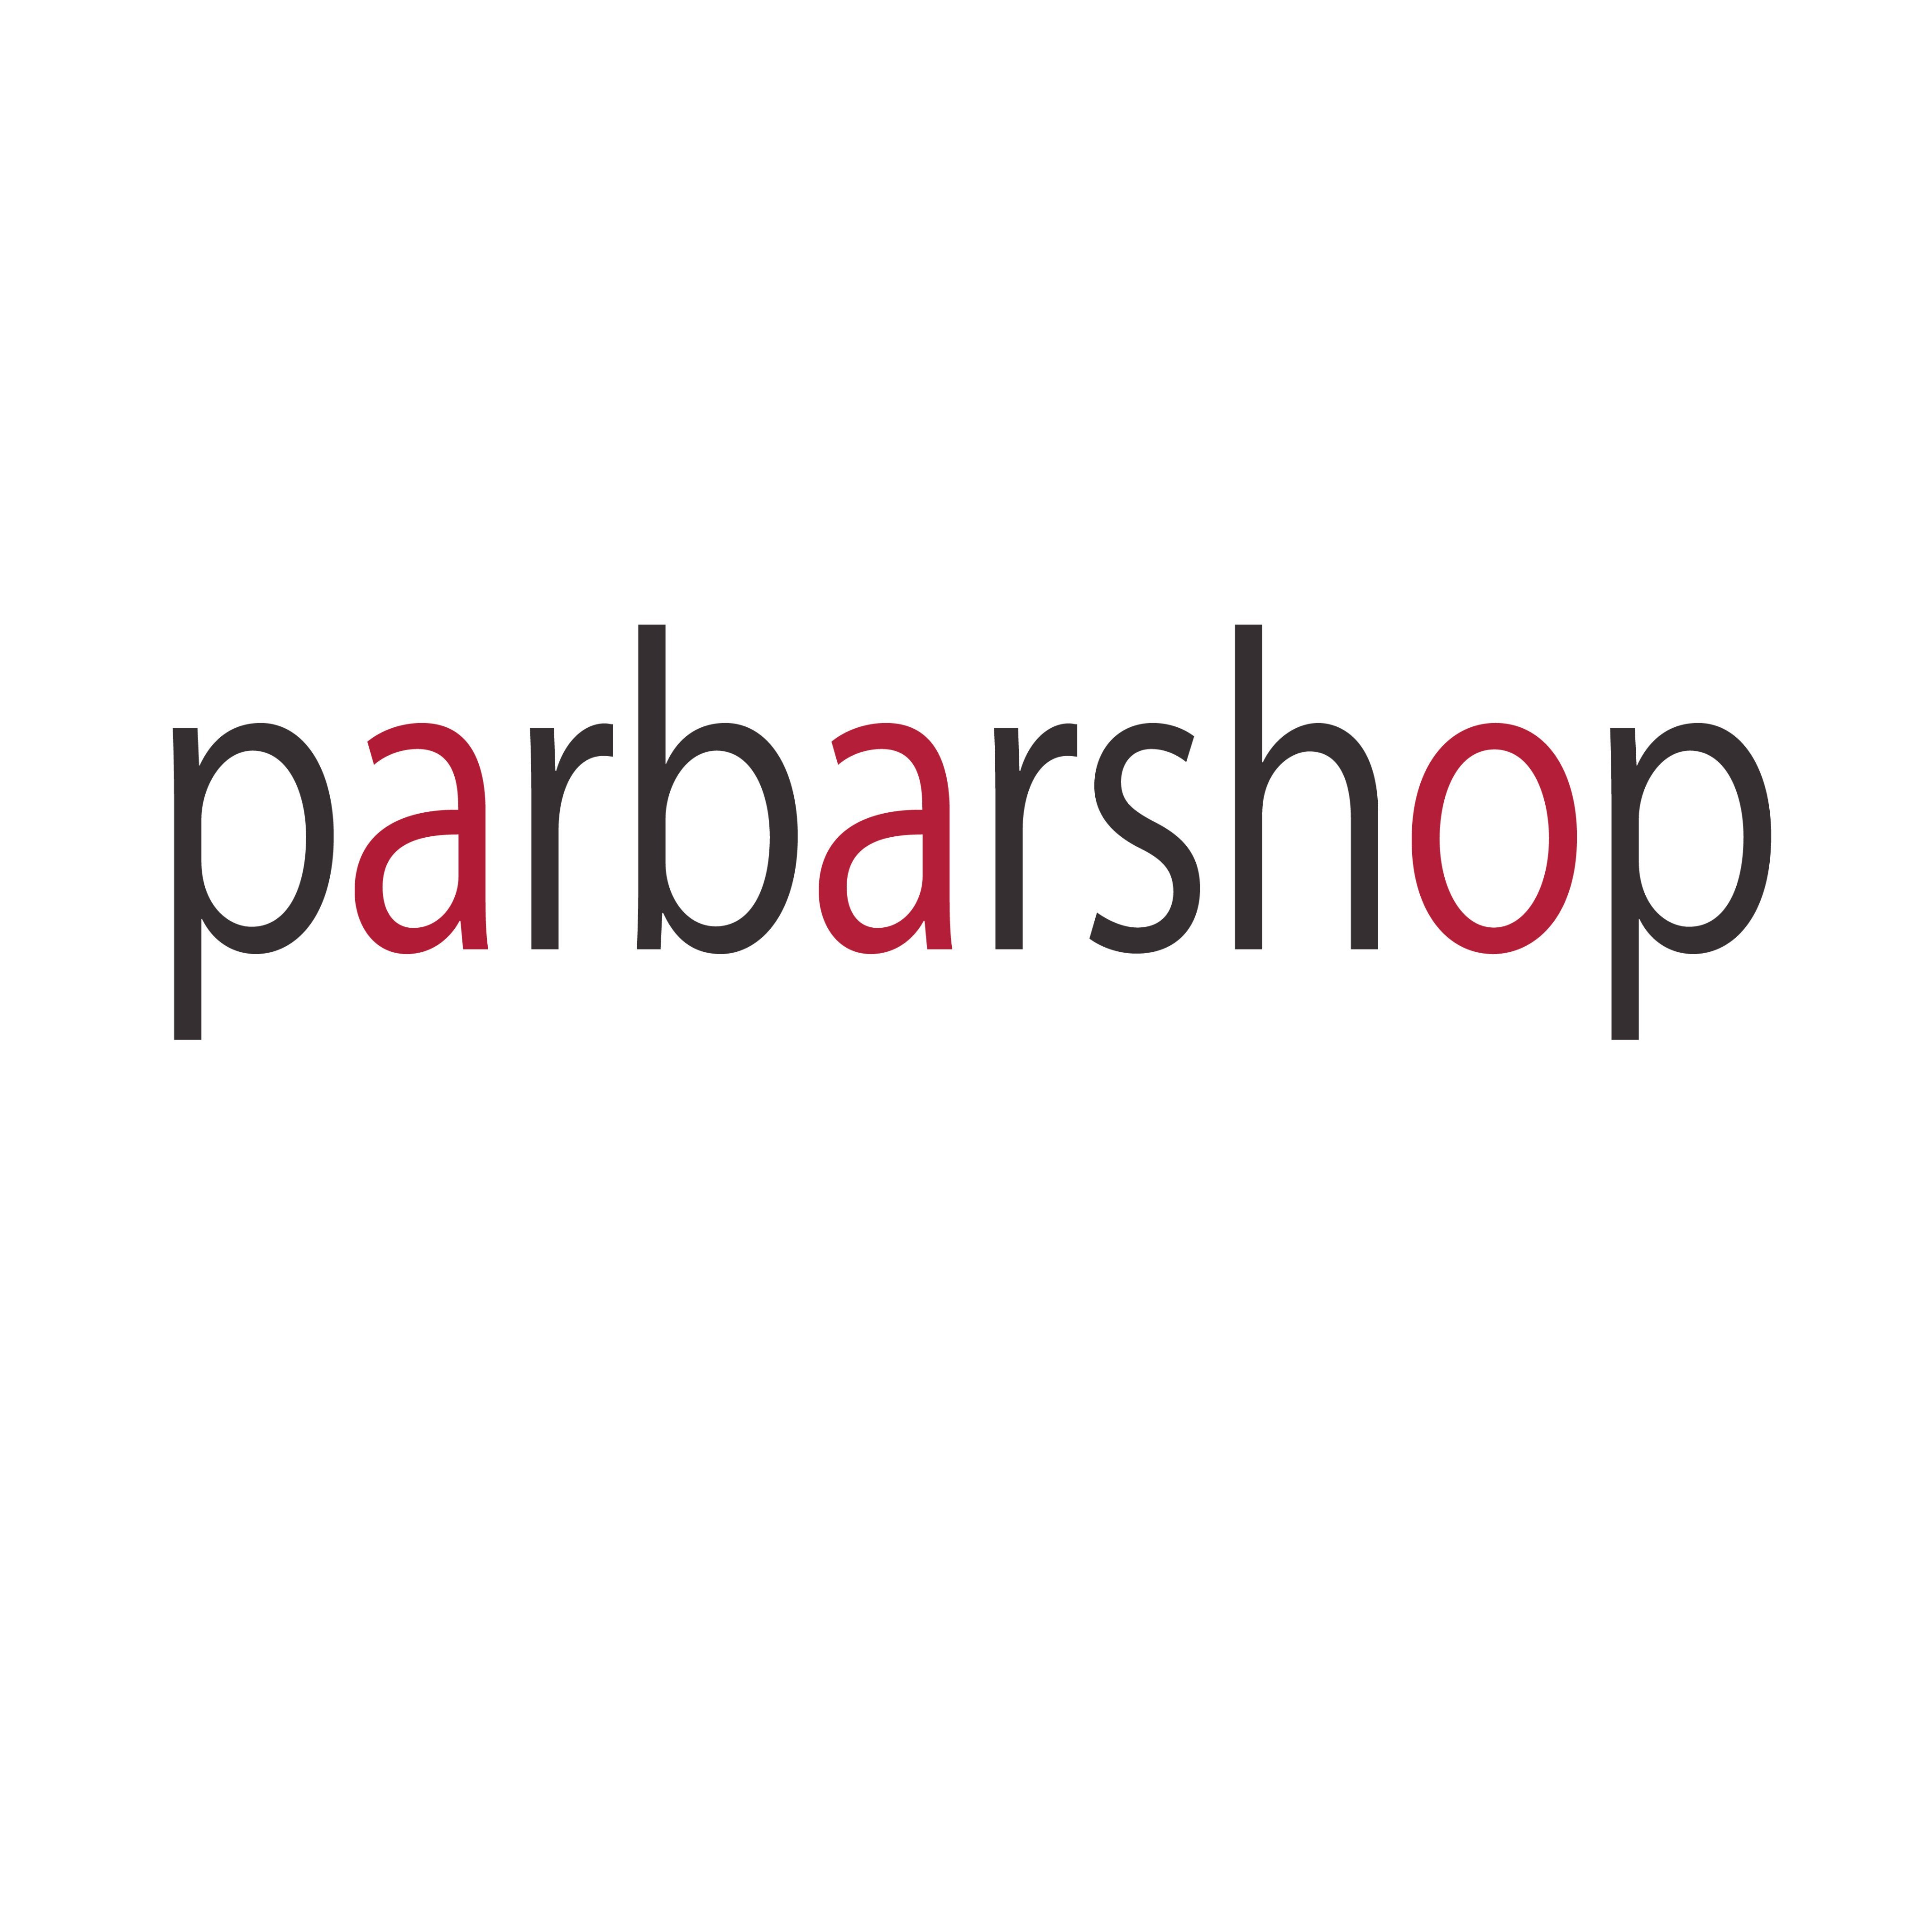 parbarshop